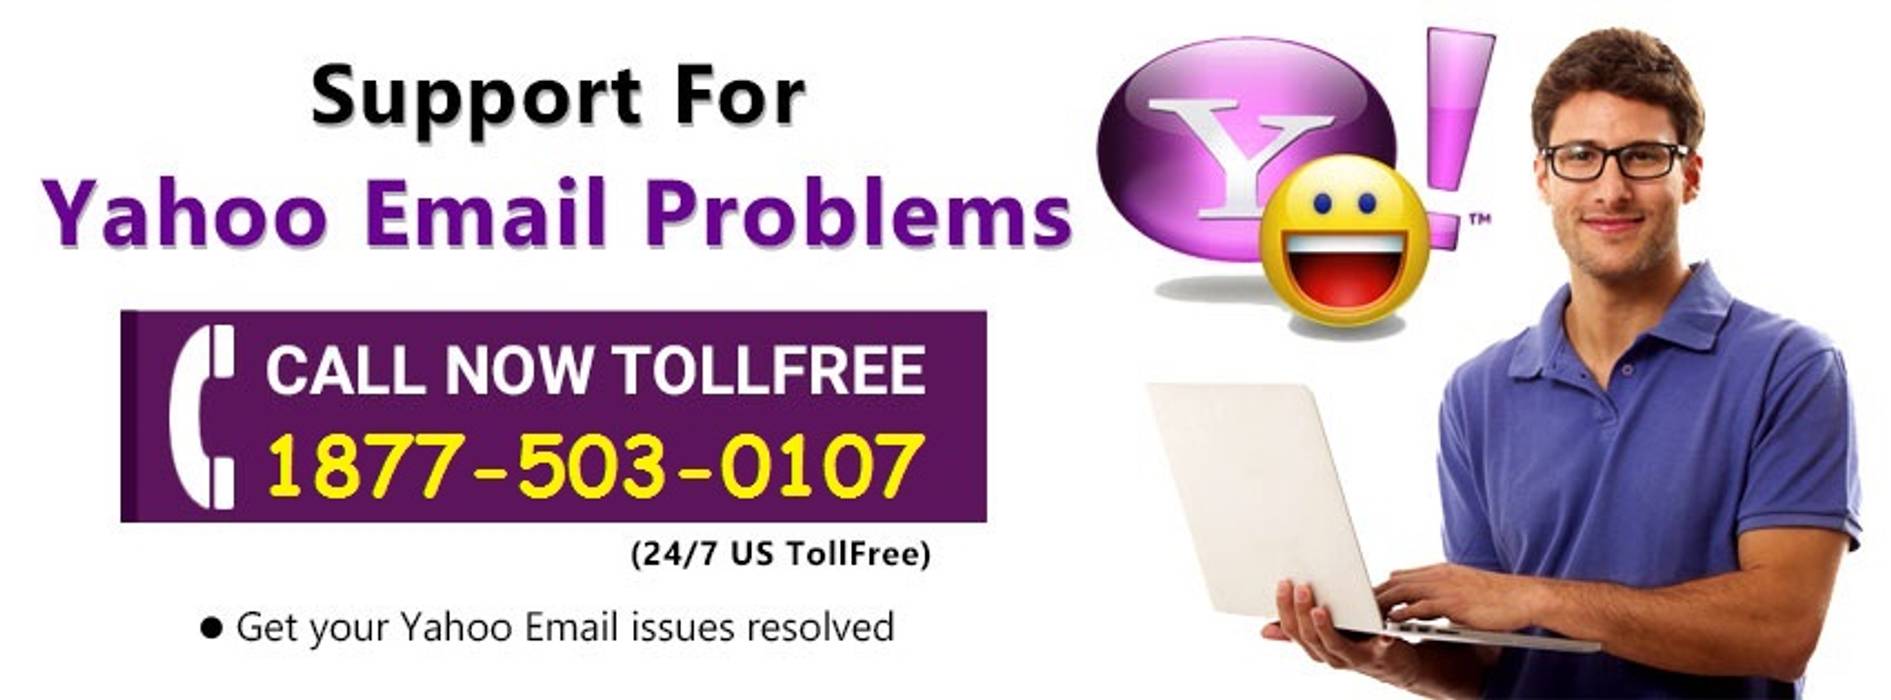 Contact Yahoo Customer Support Phone Number 1877-503-0107, Yahoo Mail Support Number 1877-503-0107 Yahoo Mail Support Number 1877-503-0107 Pavimentos Derivados de madeira Transparente